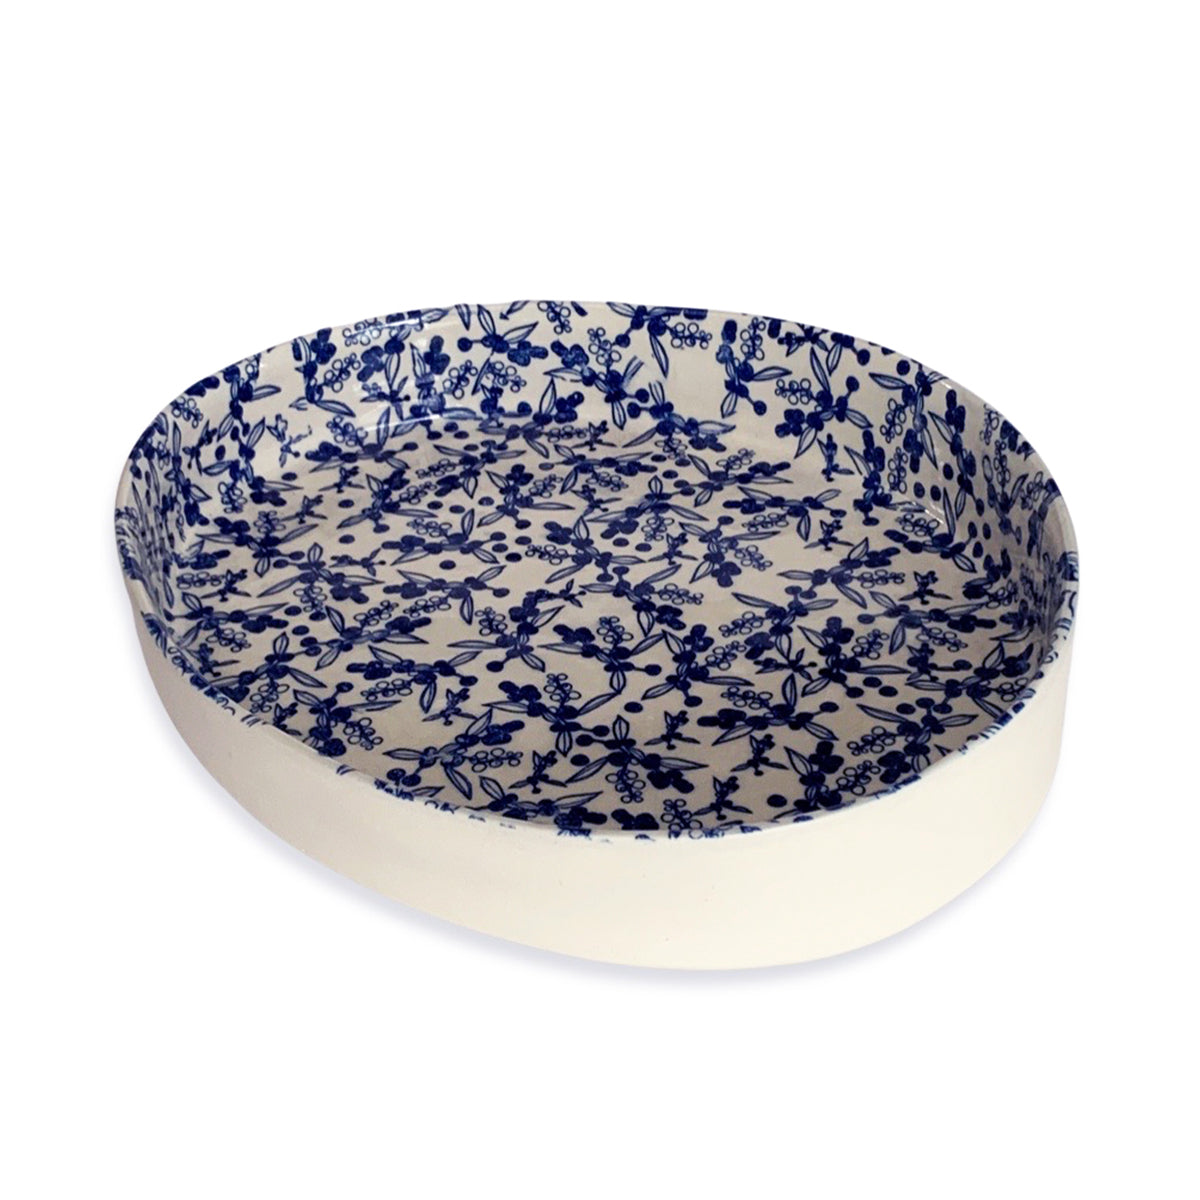 Floral Blue Platter Serving Large